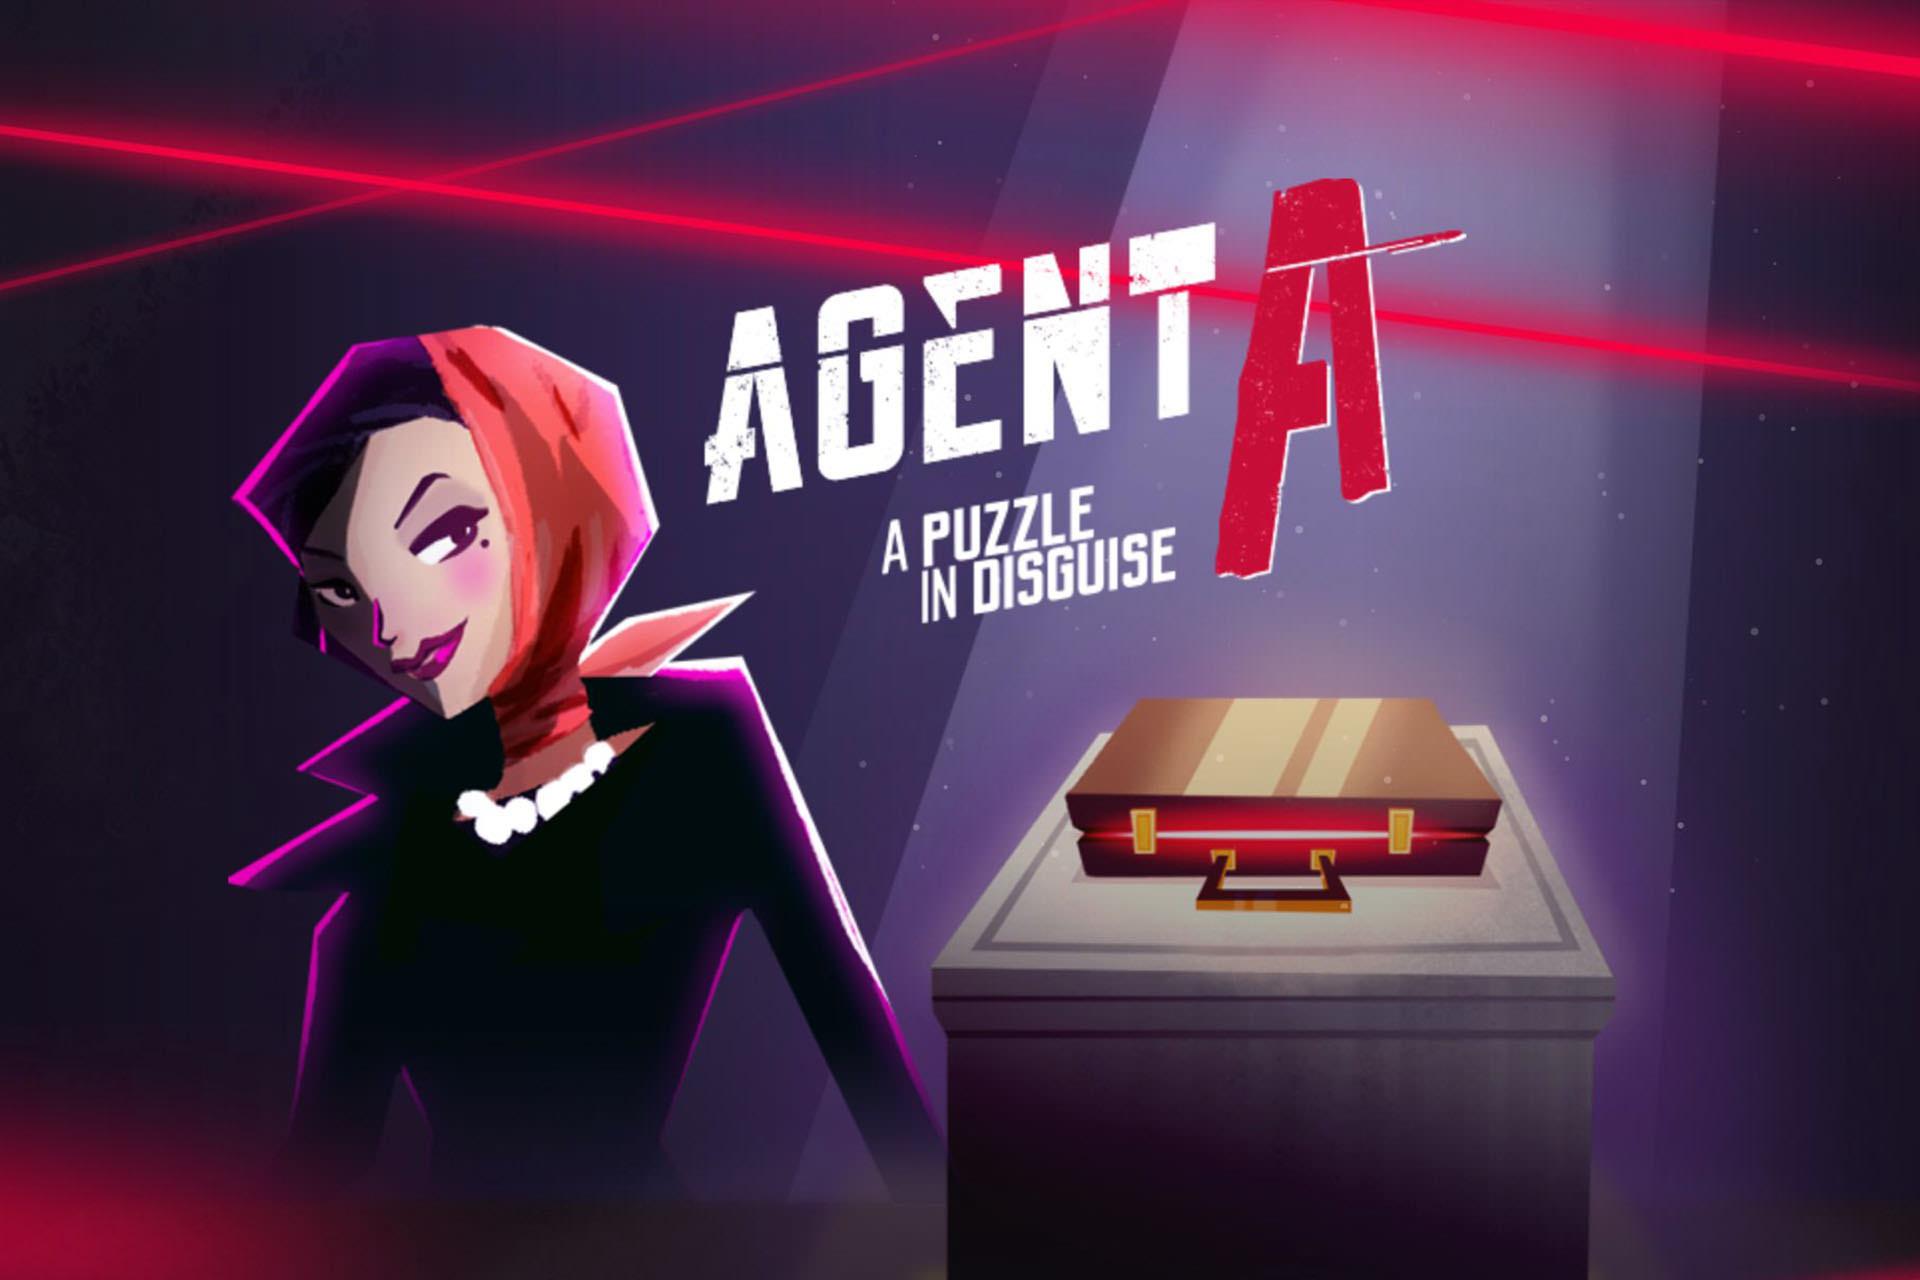 بررسی بازی Agent A: A Puzzle in Disguise